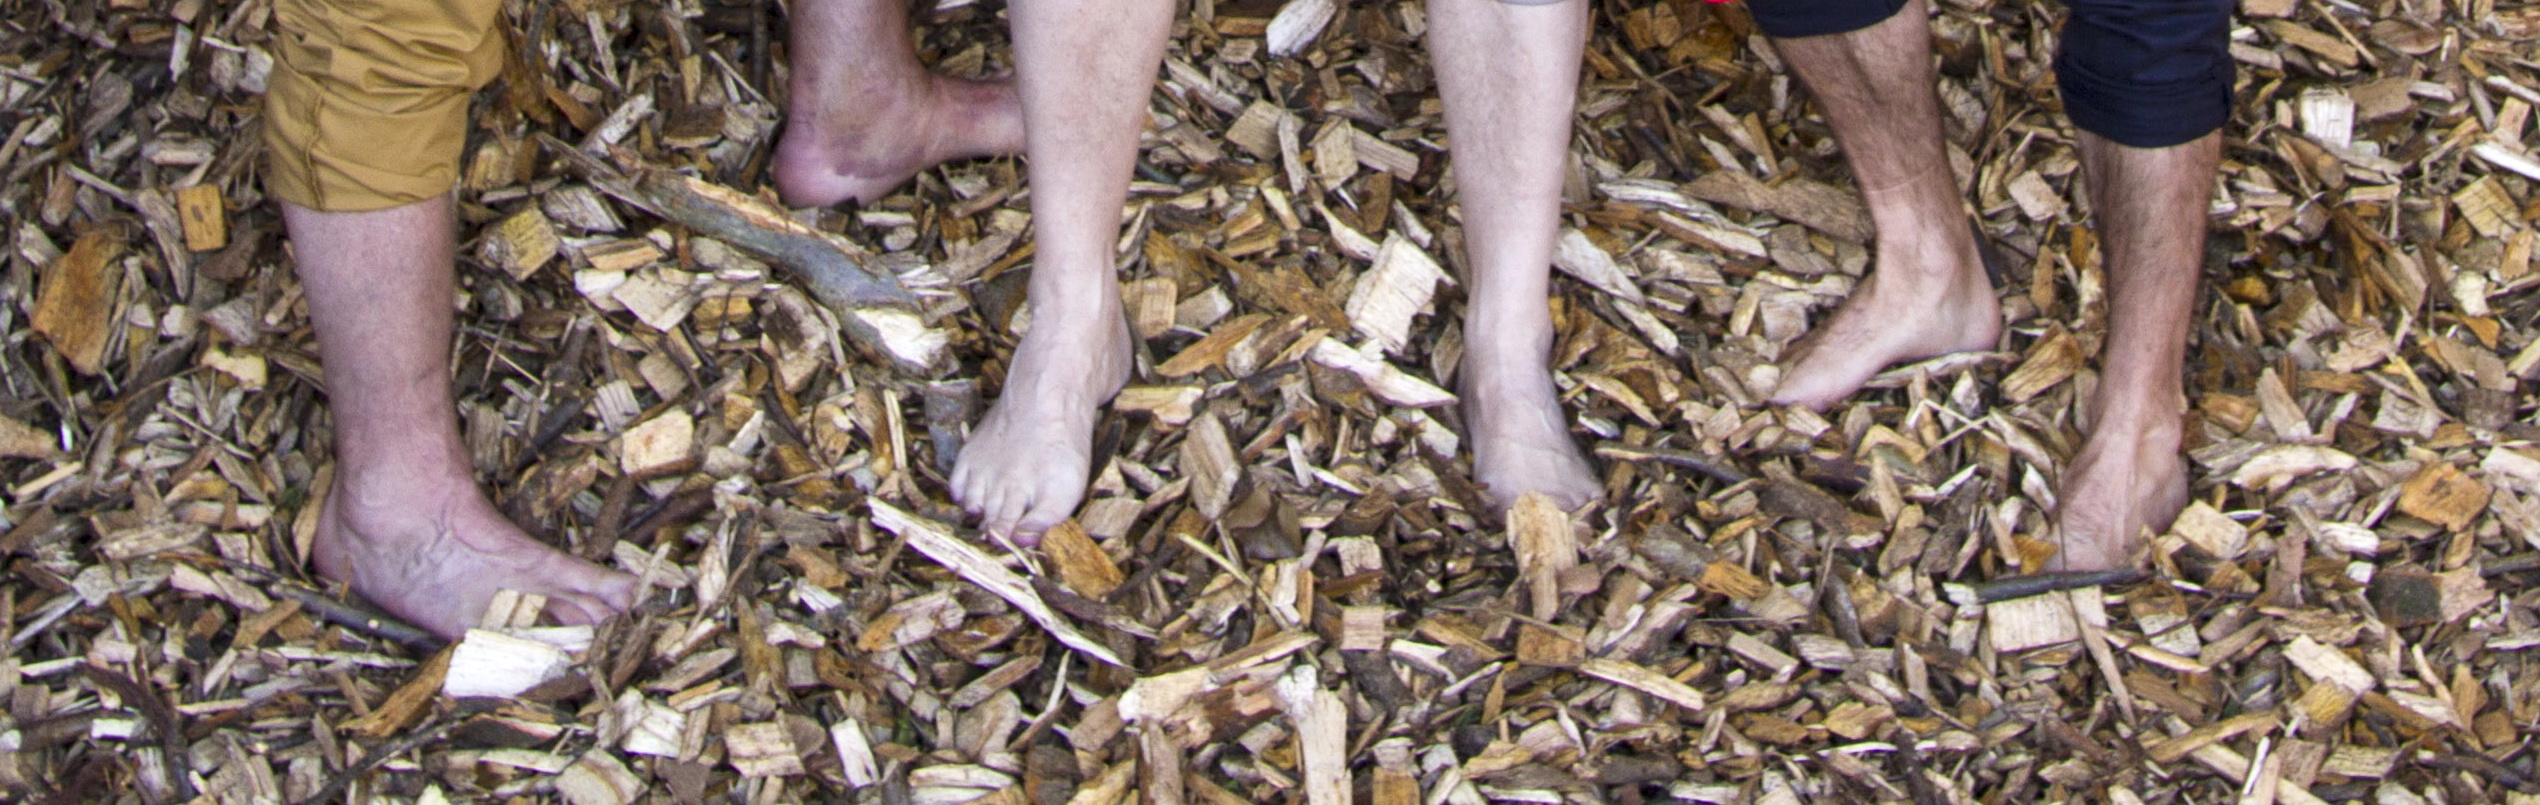 Forschungsprojekt Opossum: Nackte Füße in Hackschnitzeln